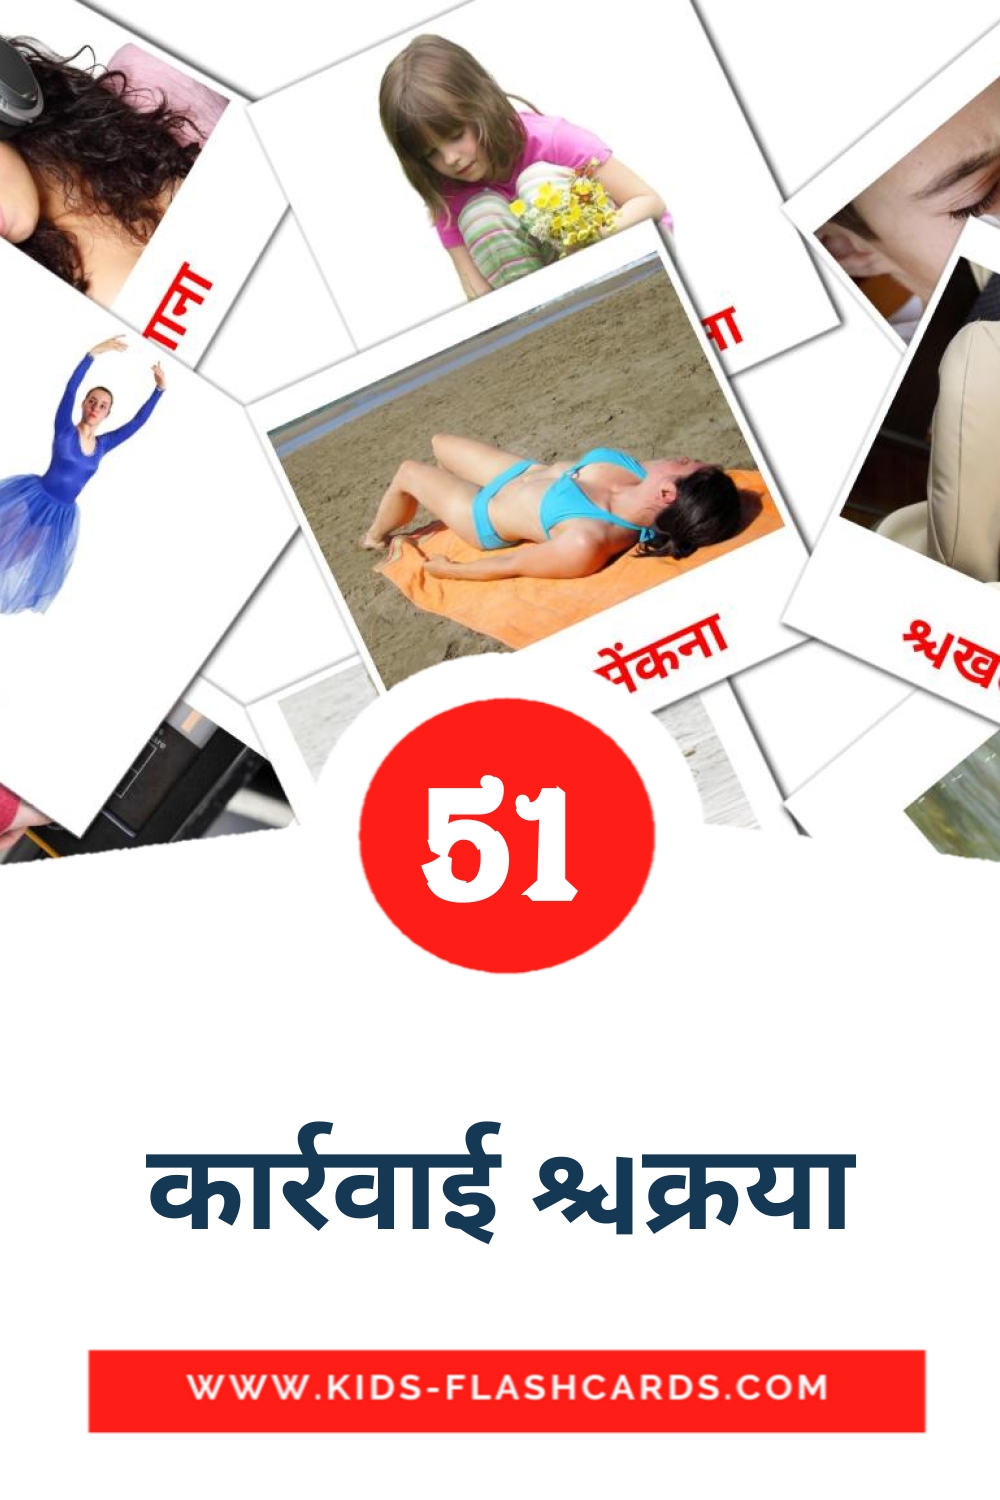 51 कार्रवाई क्रिया fotokaarten voor kleuters in het hindi